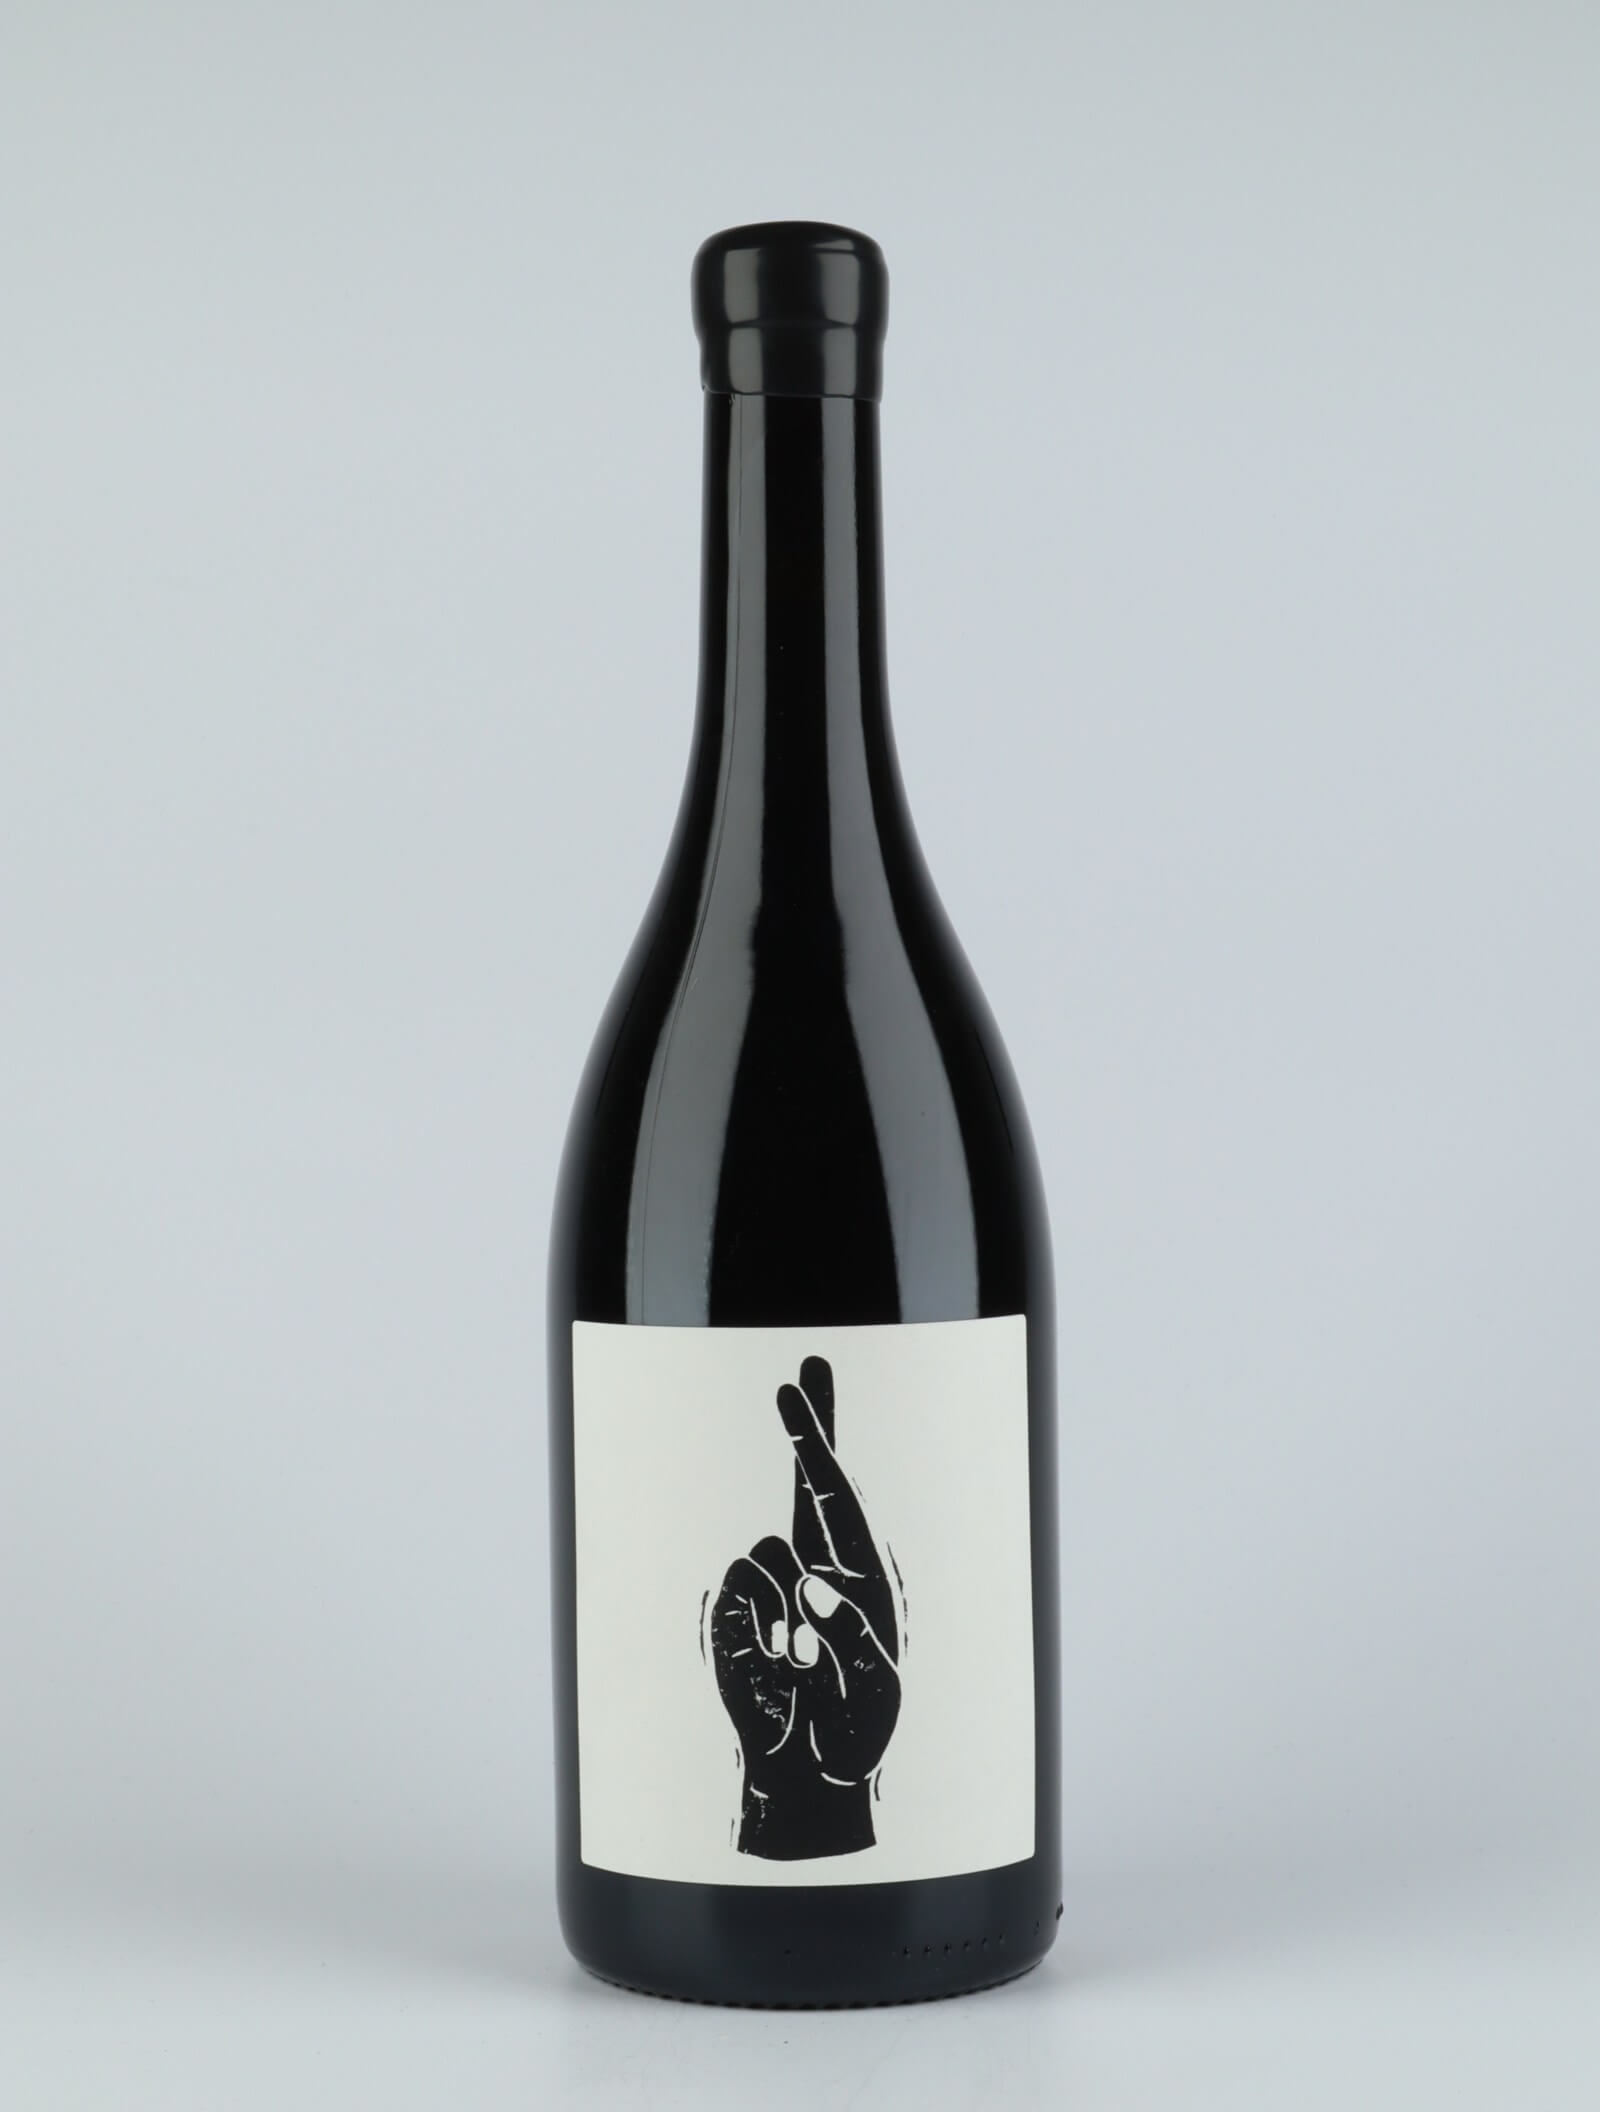 En flaske 2018 Julienas Rødvin fra Vin Noé, Beaujolais i Frankrig